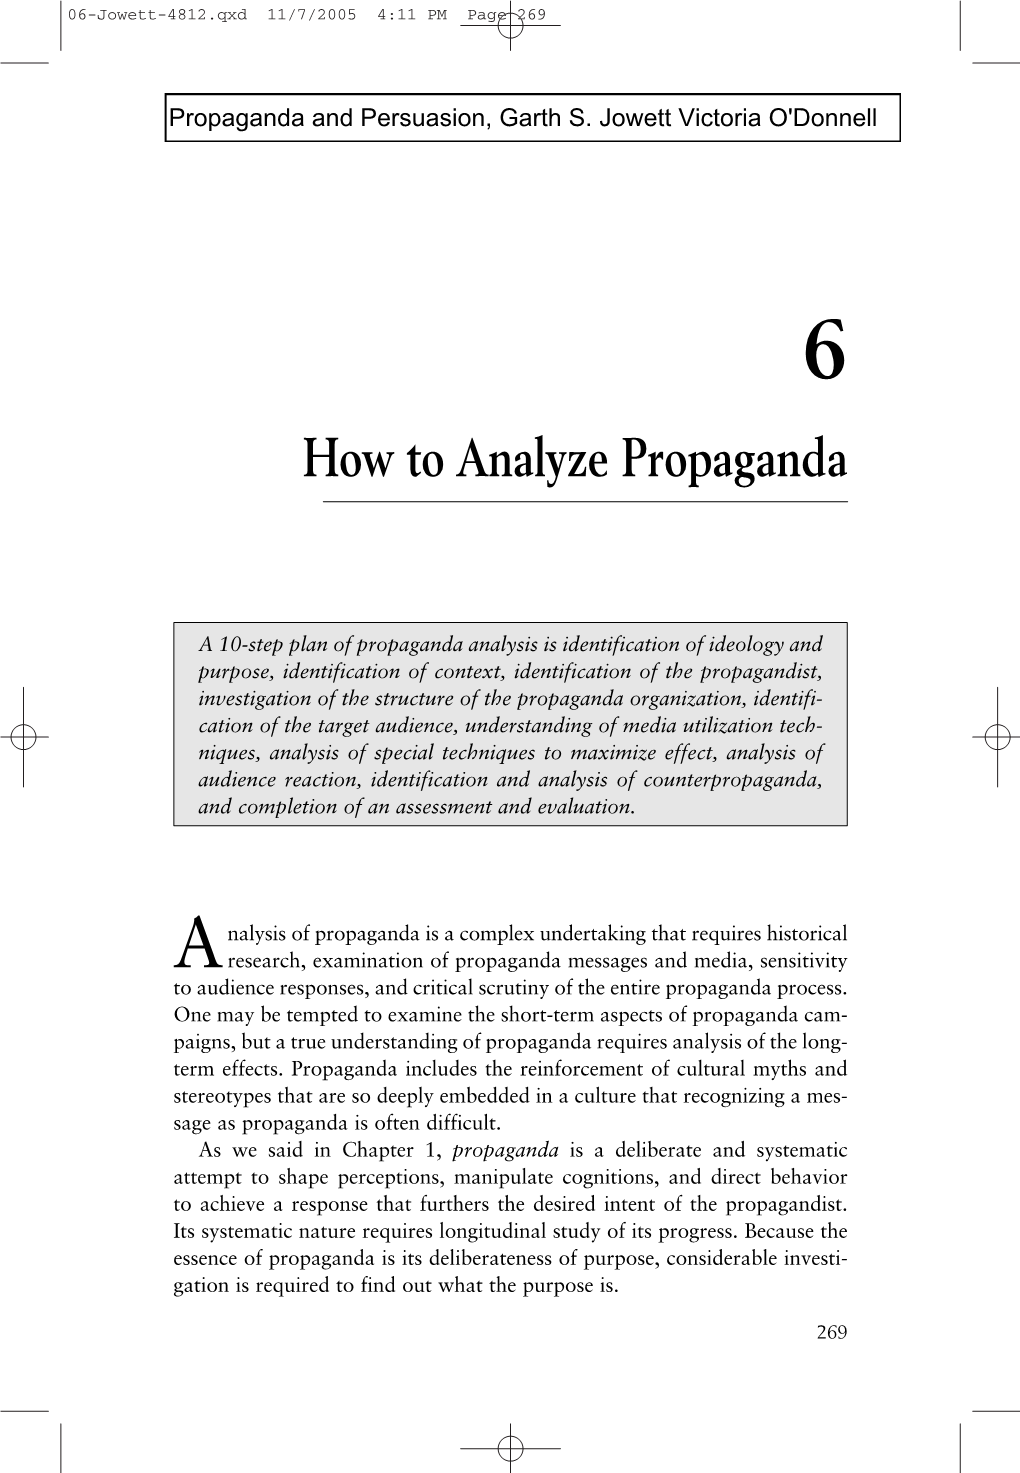 How to Analyze Propaganda